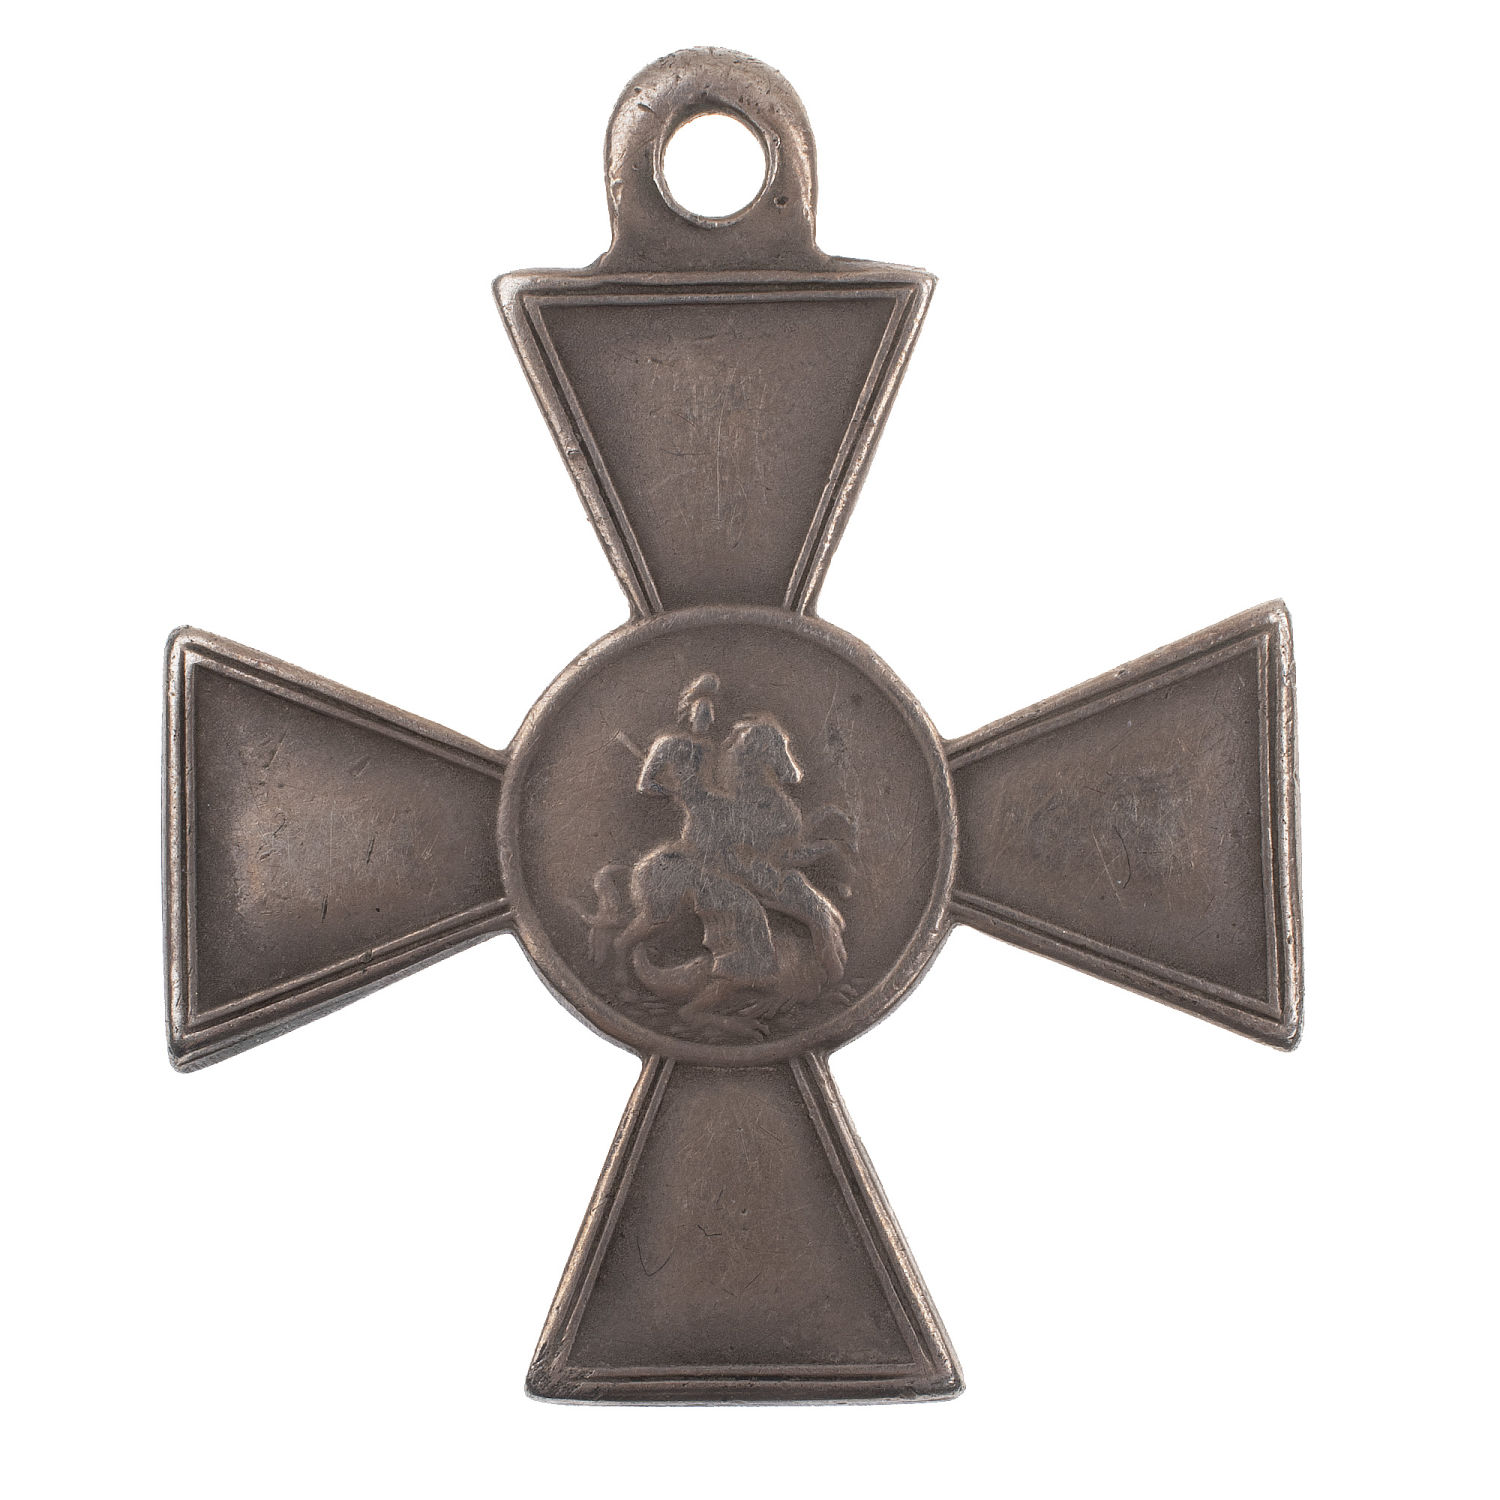 Знак Отличия Военного Ордена 4 ст 50.233 (150 пехотный Таманский полк).